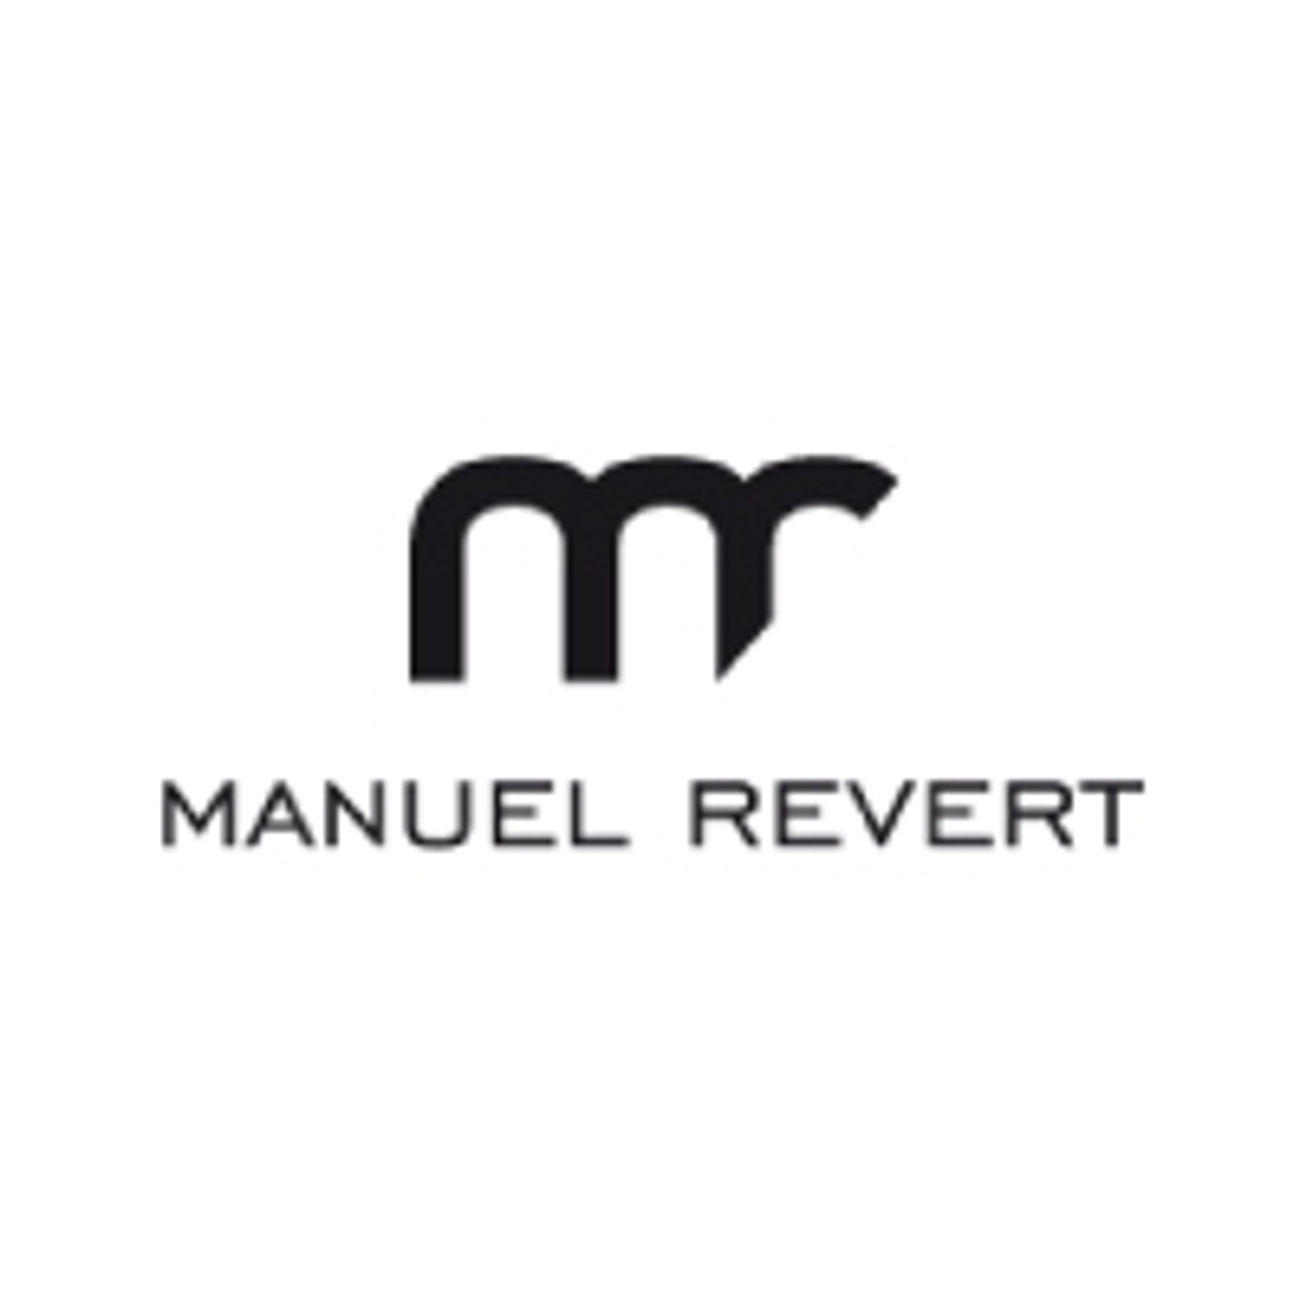 Manuel Revert y CIA  S-A-